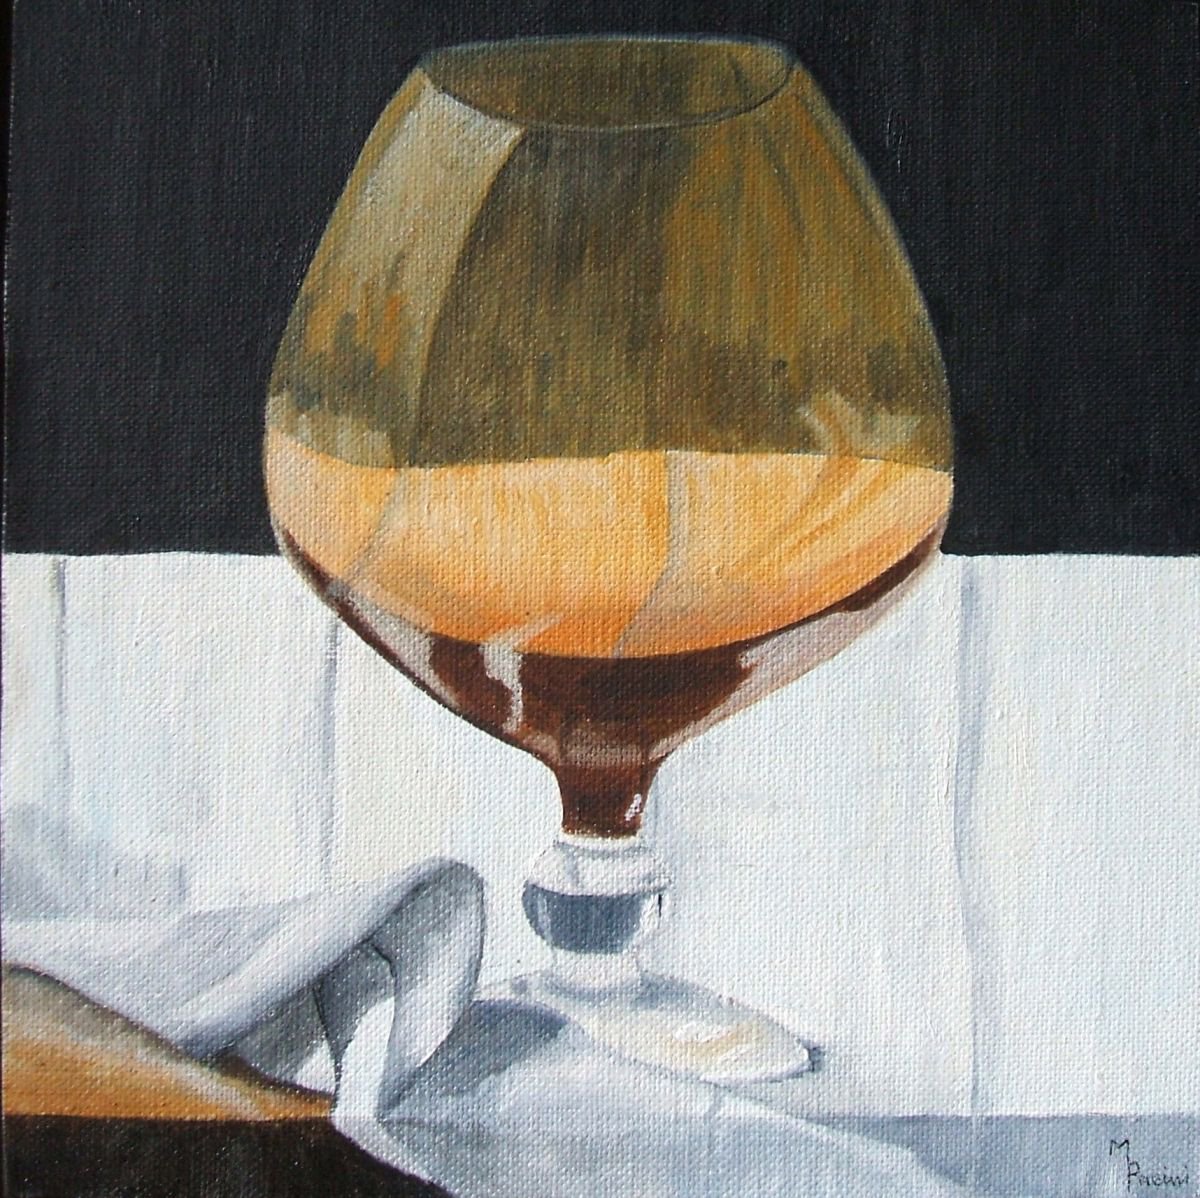 The Brandy Glass by Maddalena Pacini